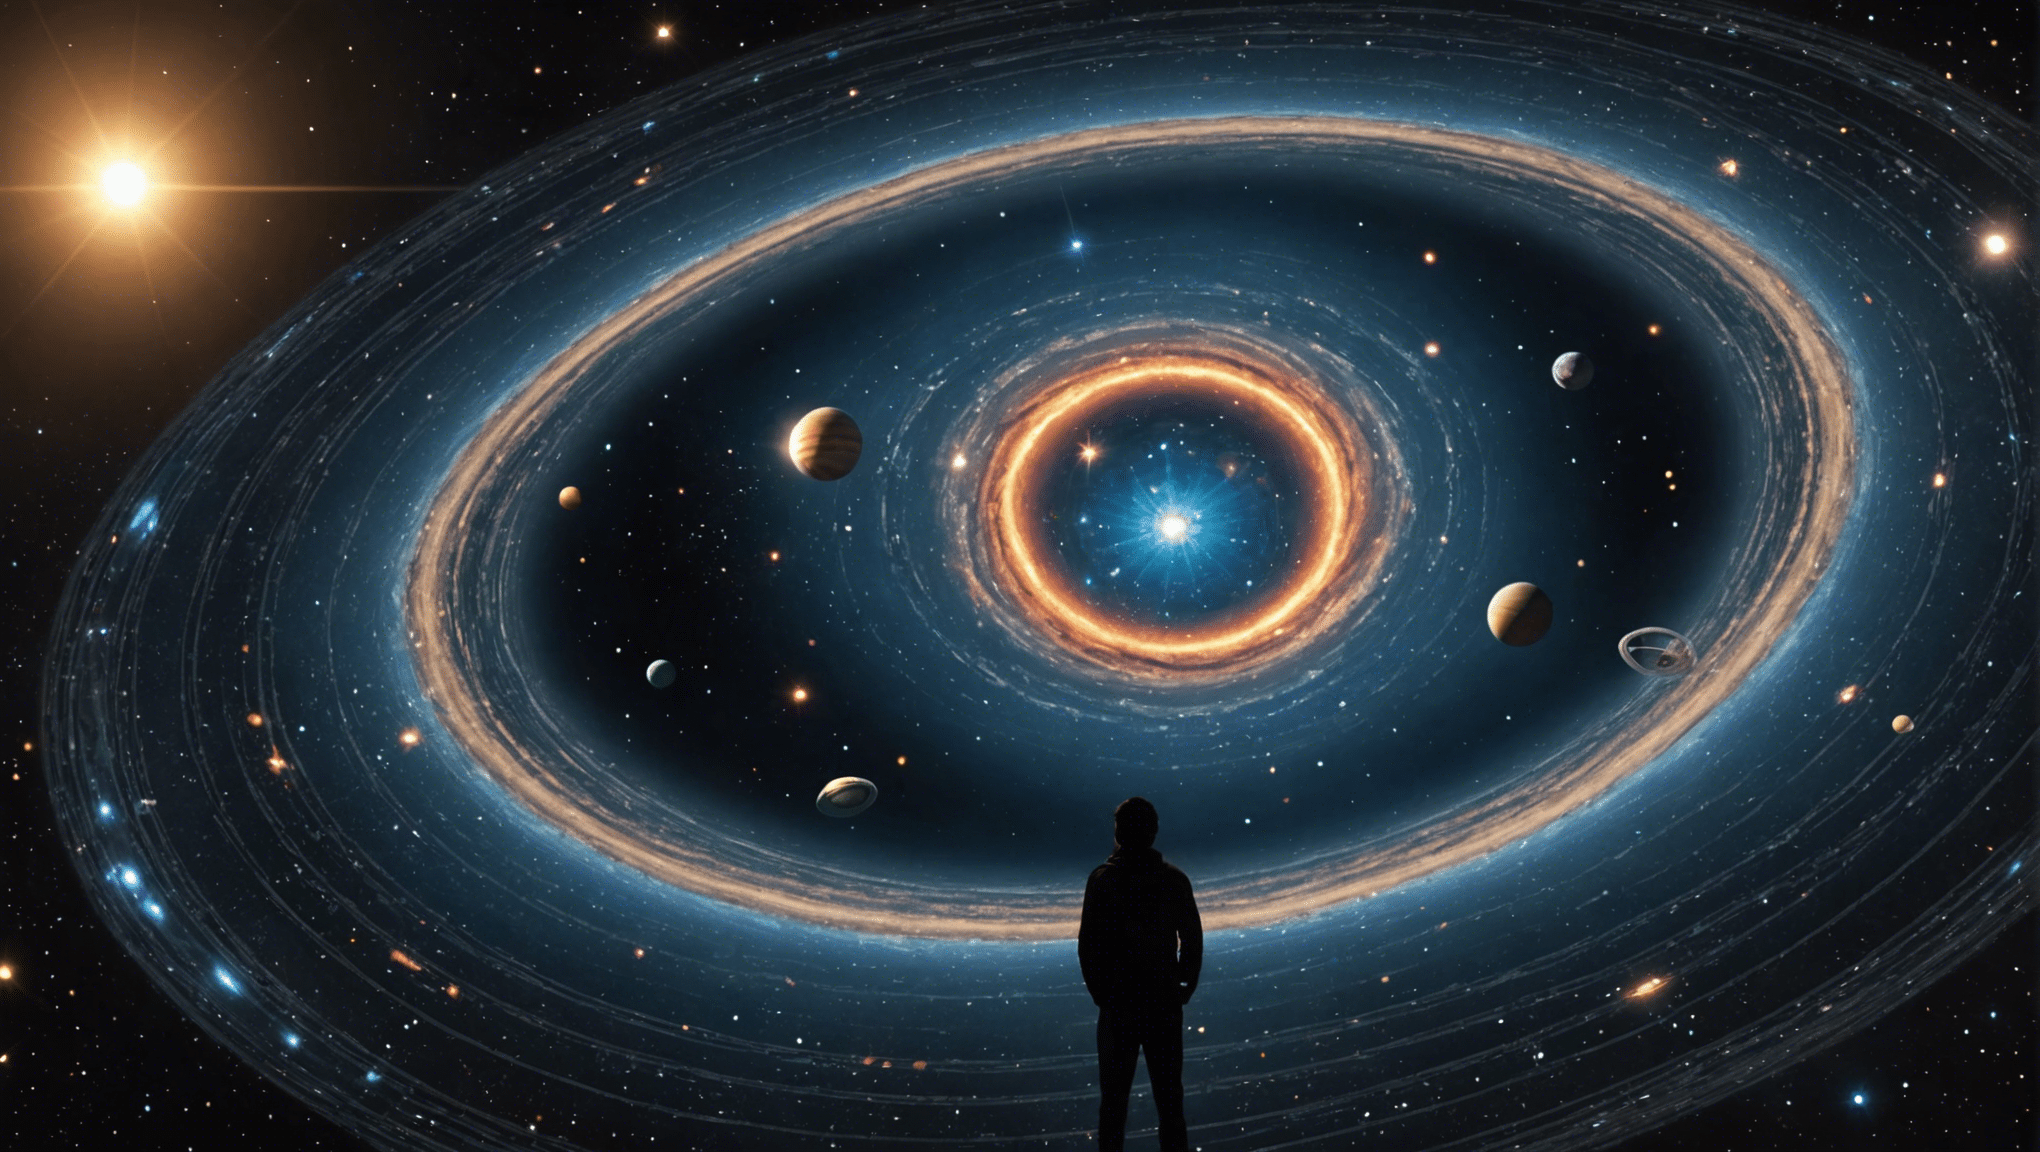 découvrez l'incroyable odyssée cosmique qui nous attend et plongez dans un voyage fascinant à travers l'univers